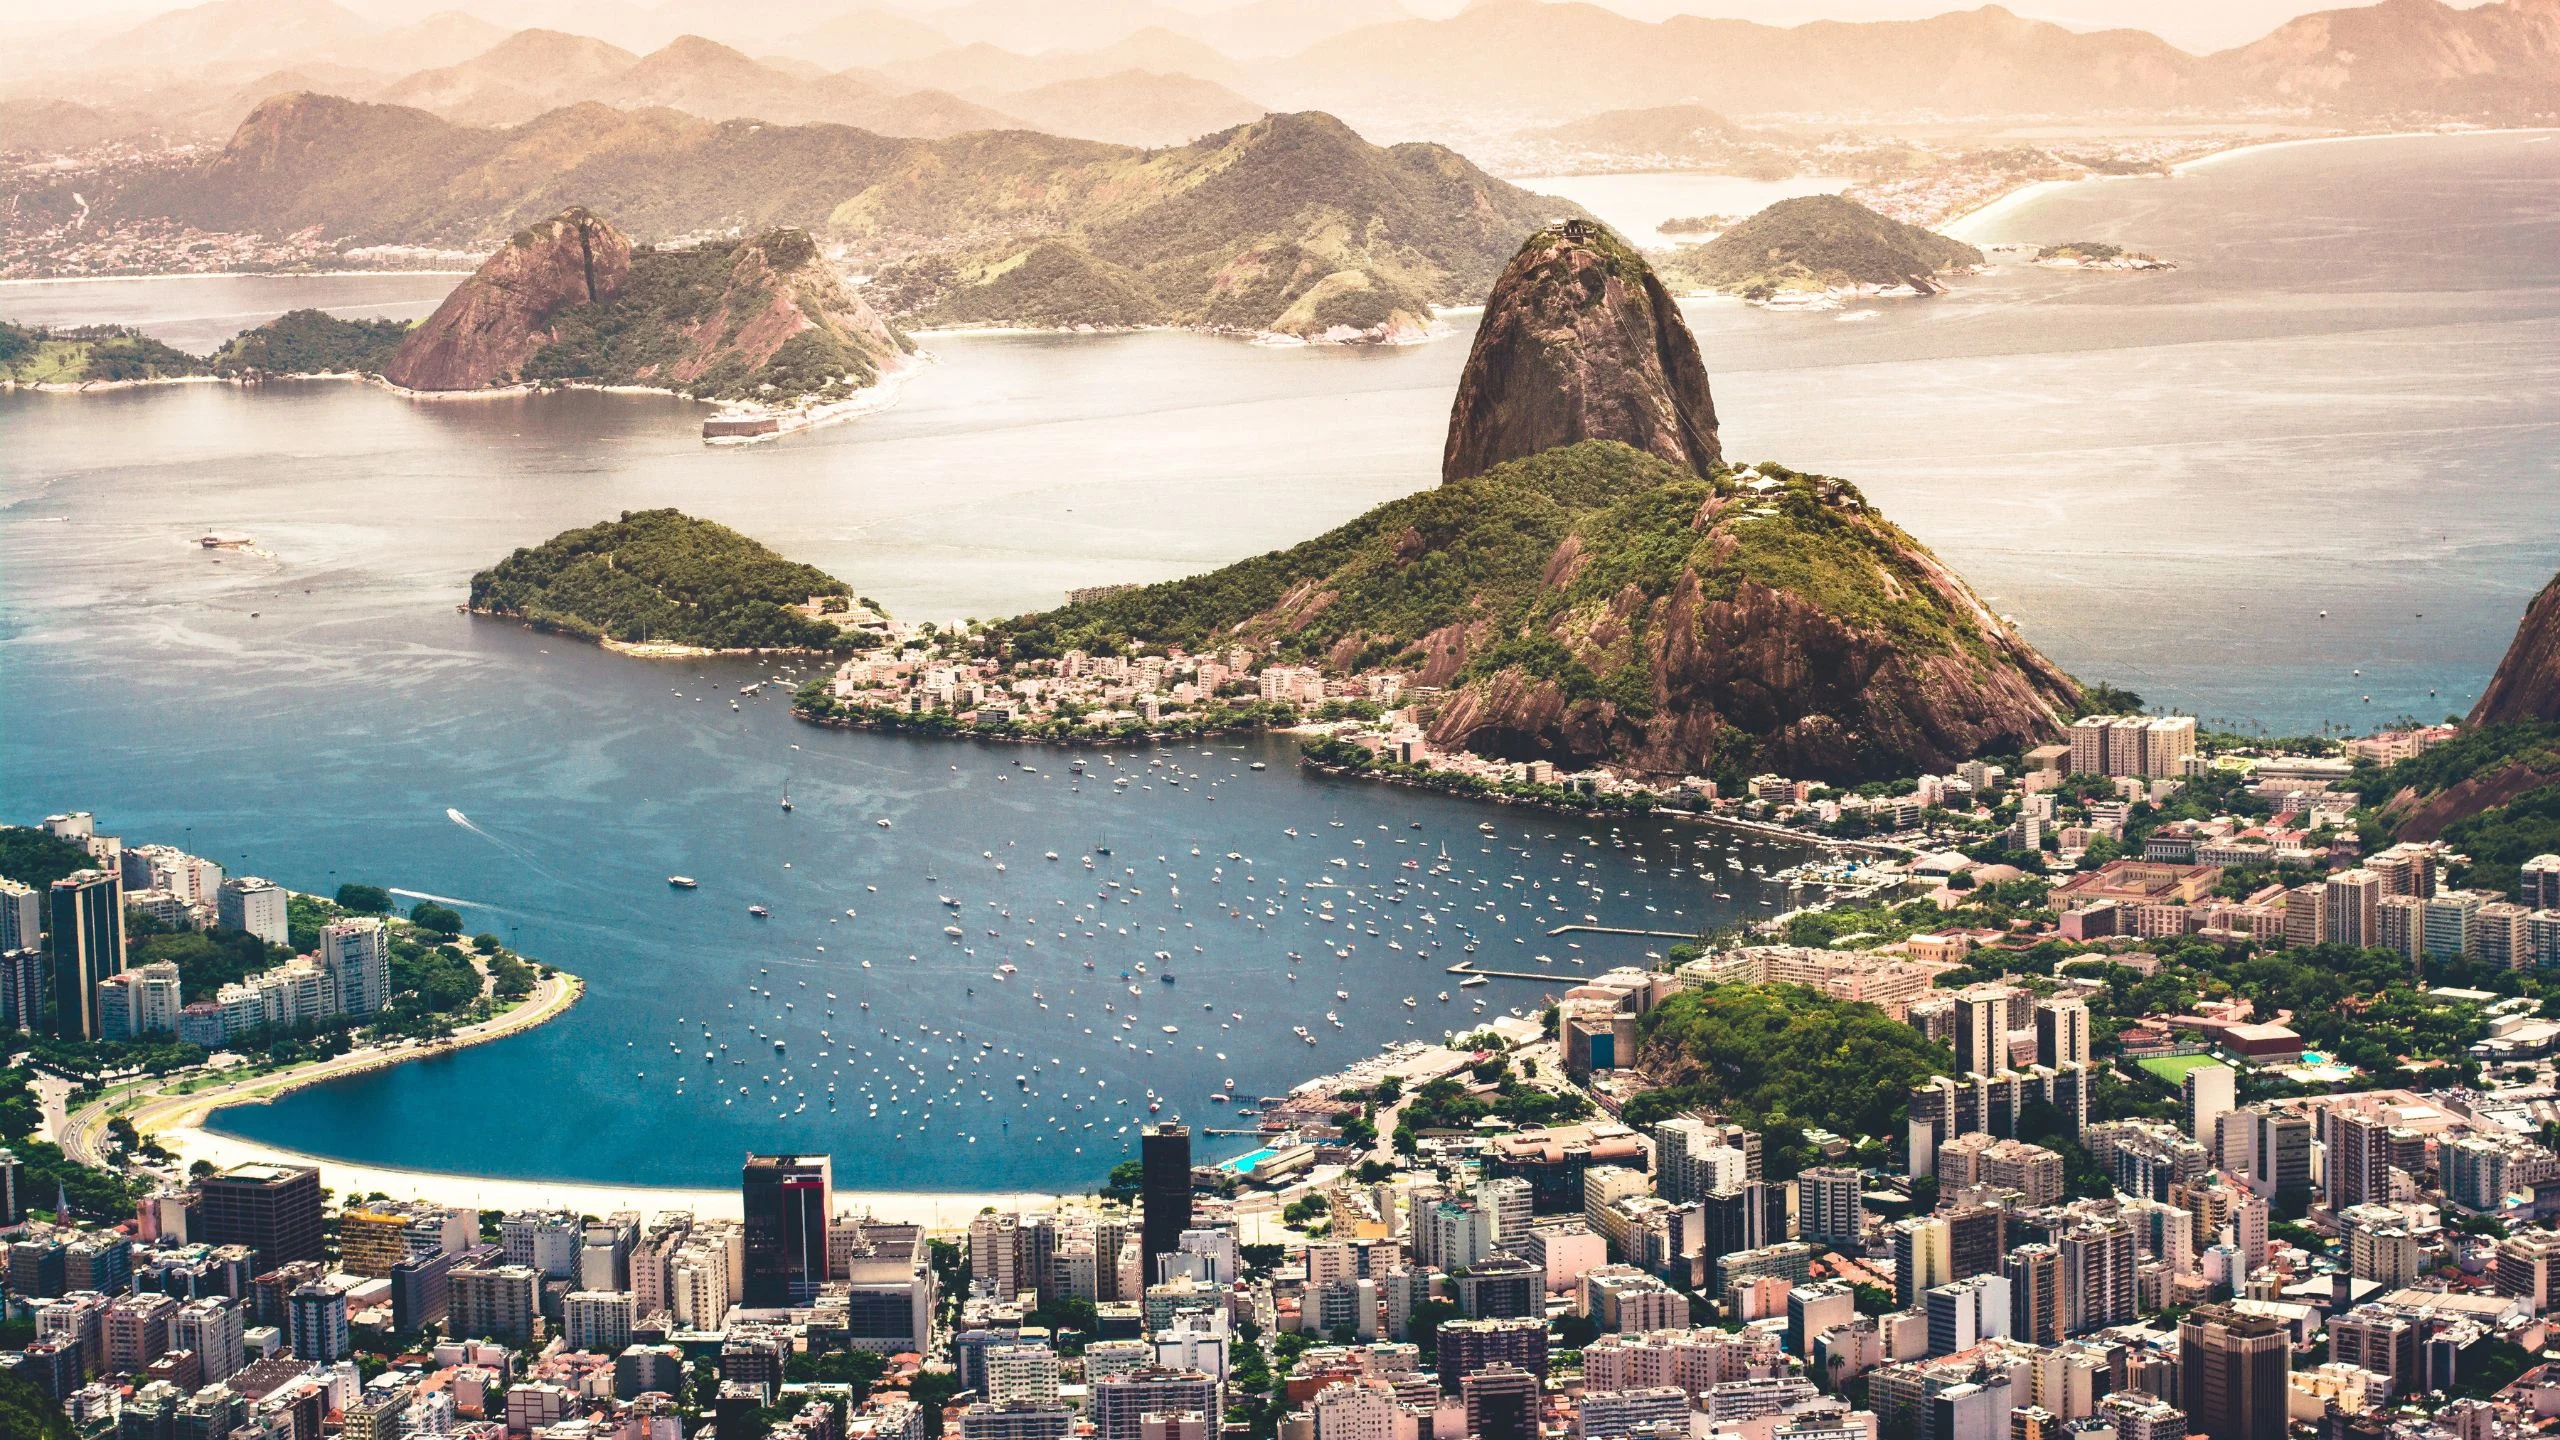 Río de Janeiro, aromas y sabores de una ciudad cosmopolita